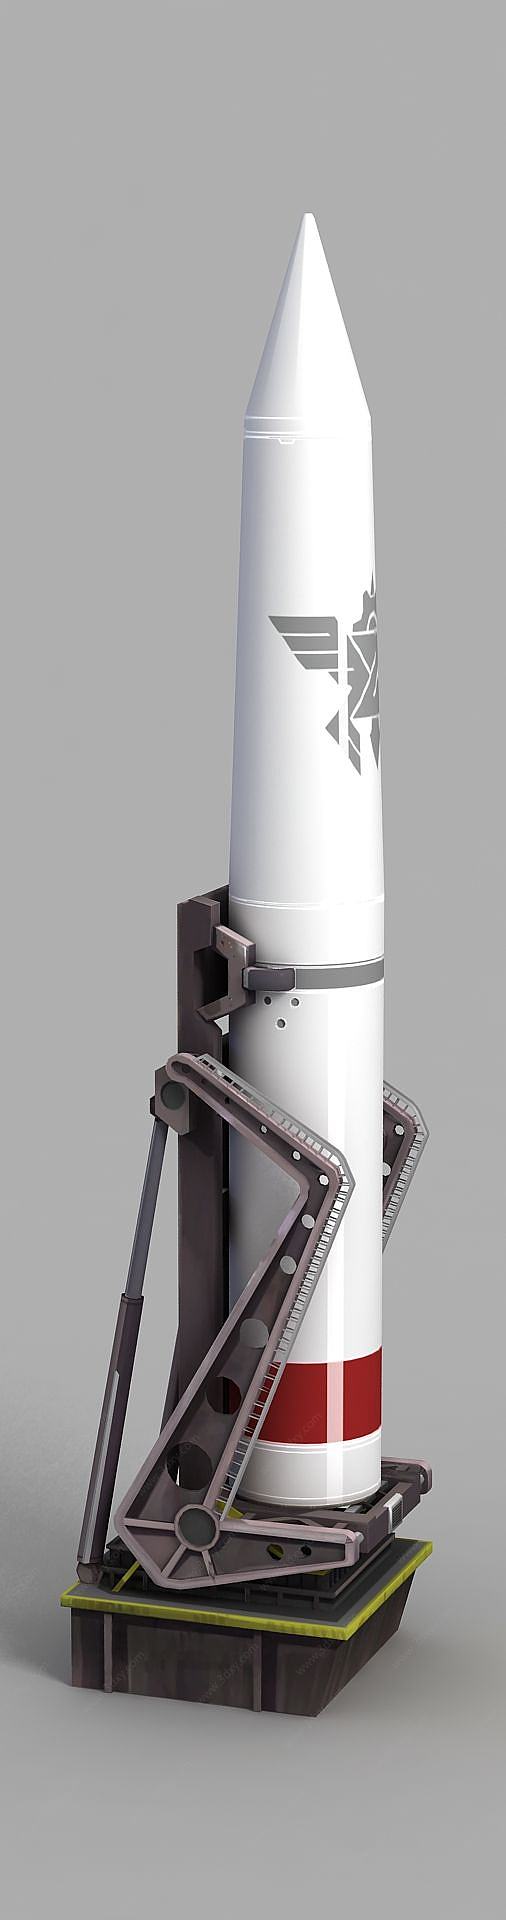 动漫运载火箭3D模型